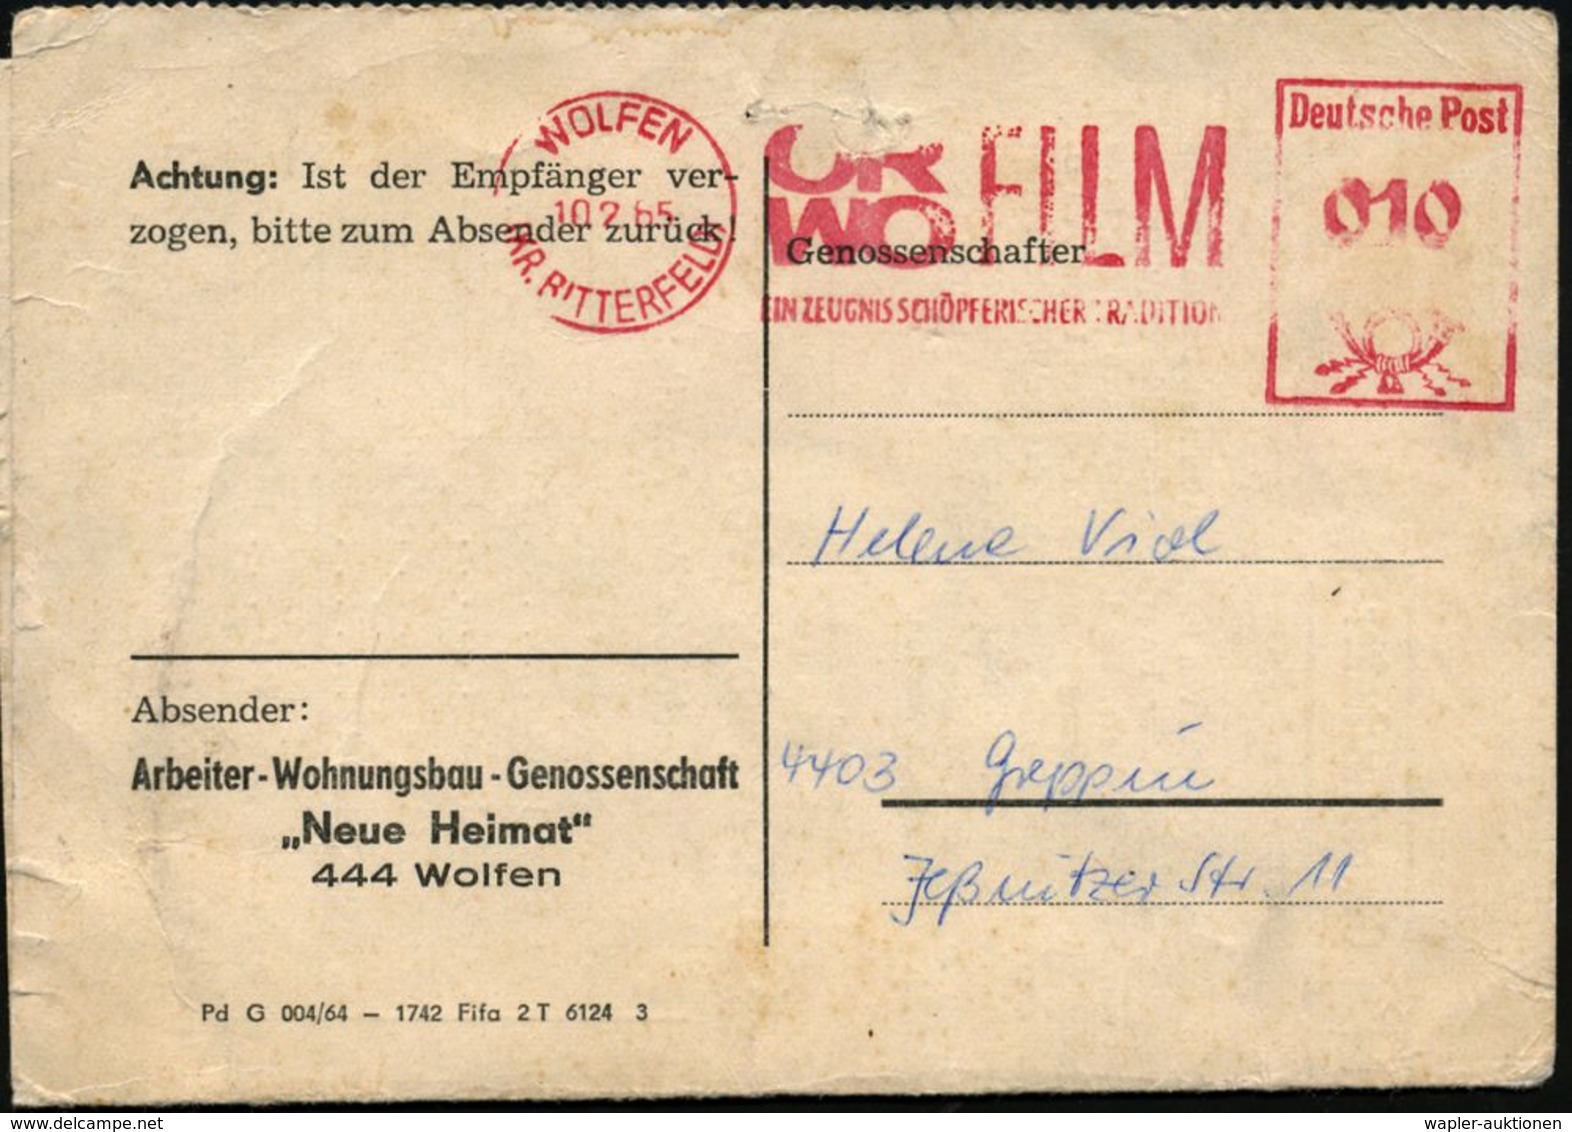 FOTOGRAFIE / KAMERAS / FOTOINDUSTRIE : WOLFEN/ (KR.BITTERFELD)ORWO FILM/ EIN ZEUGNIS SCHÖPFERISCHER TRADITION 1965 (10.2 - Photography